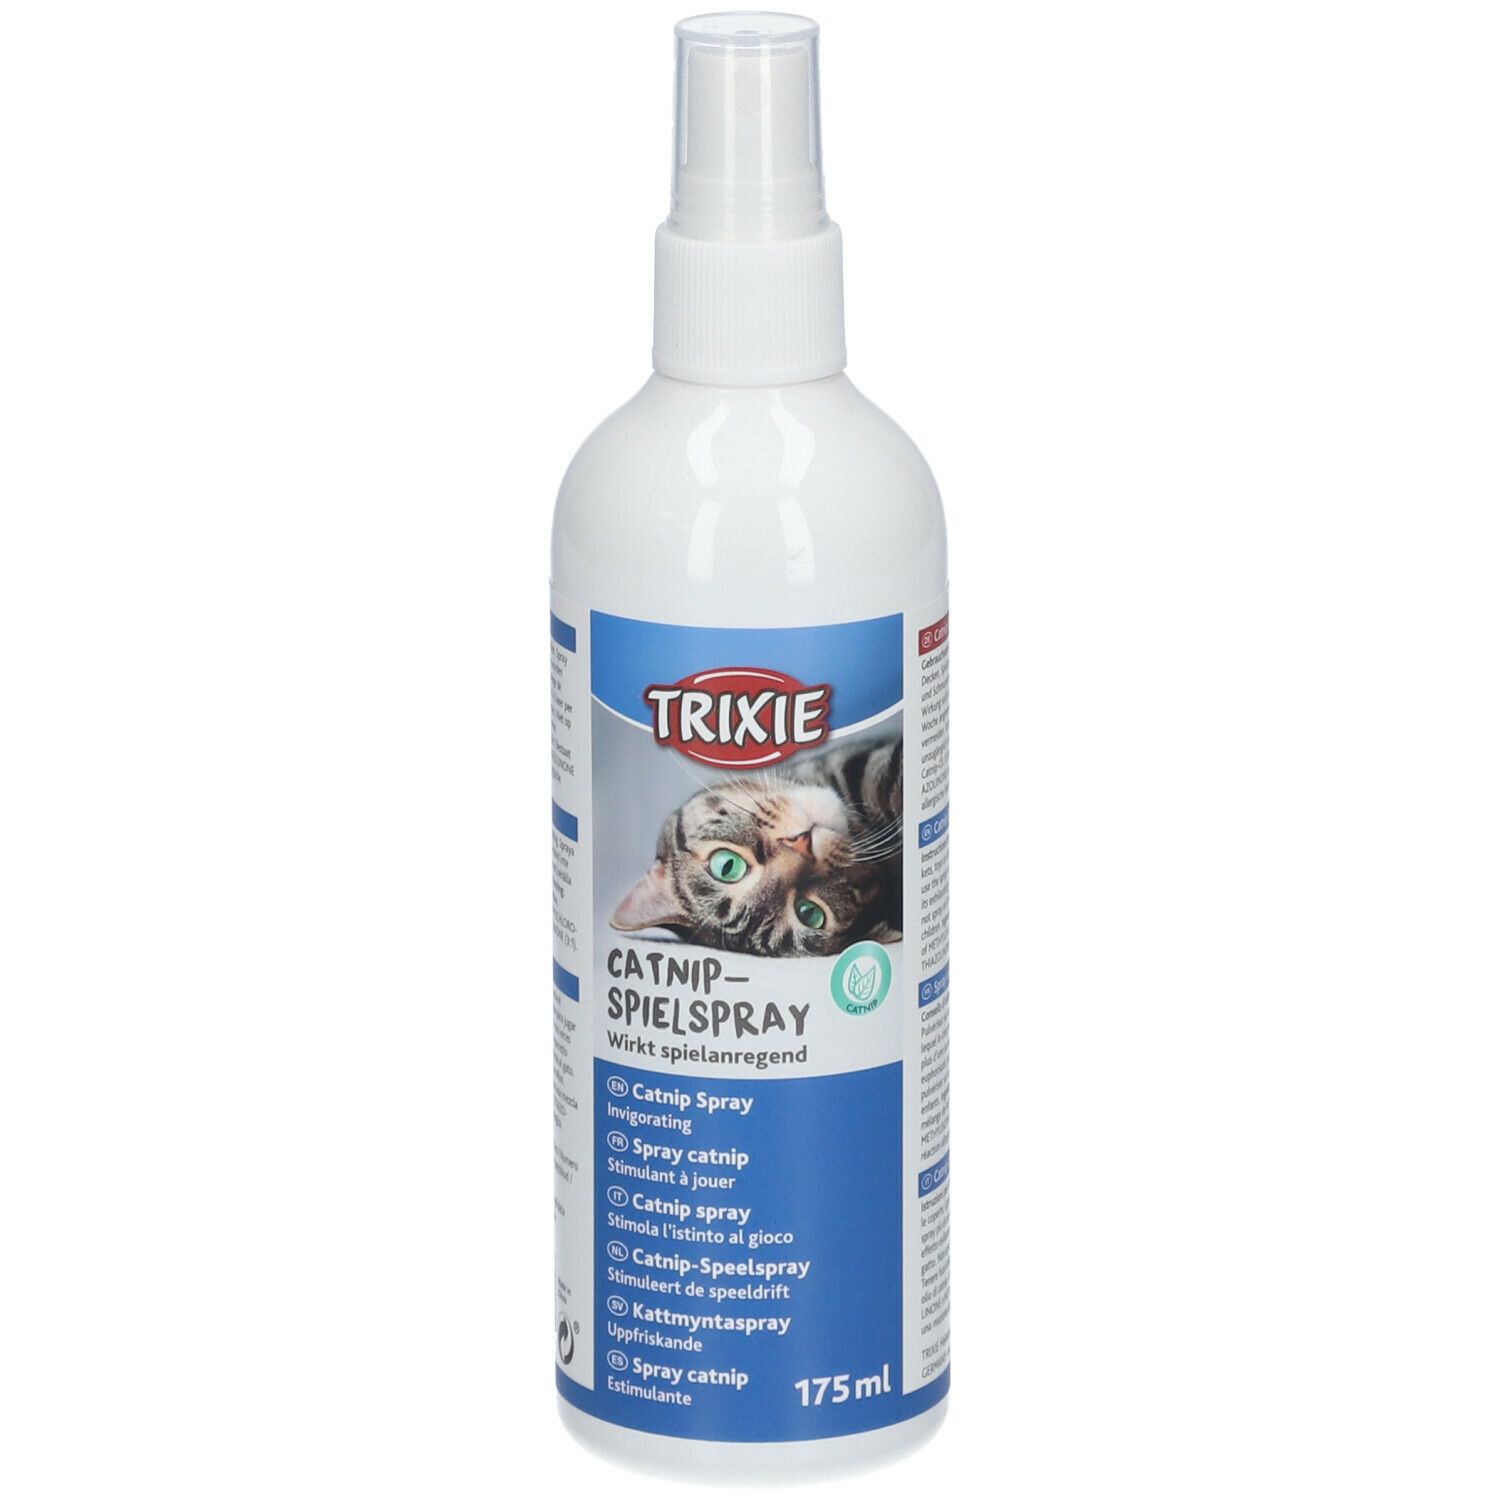 TRIXIE Catnip Spray